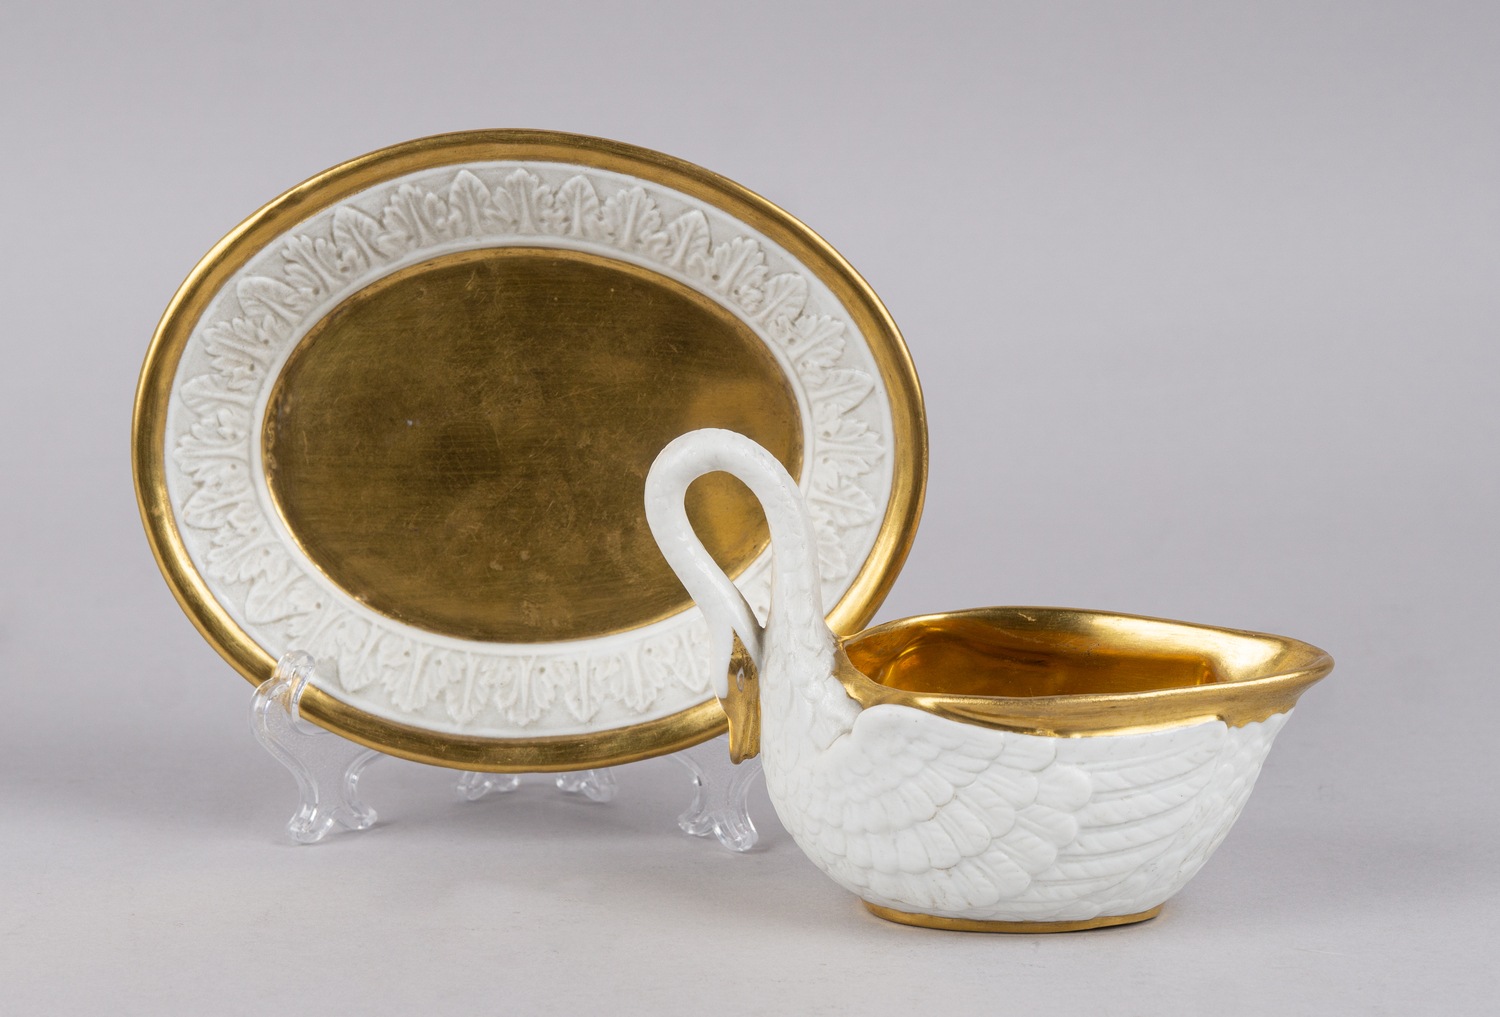 (Севр/Ампир) Чашка в стиле ампир  в виде лебедя с блюдцем. <br>Франция, Севрская фарфоровая мануфактура,  1810-1814 гг.